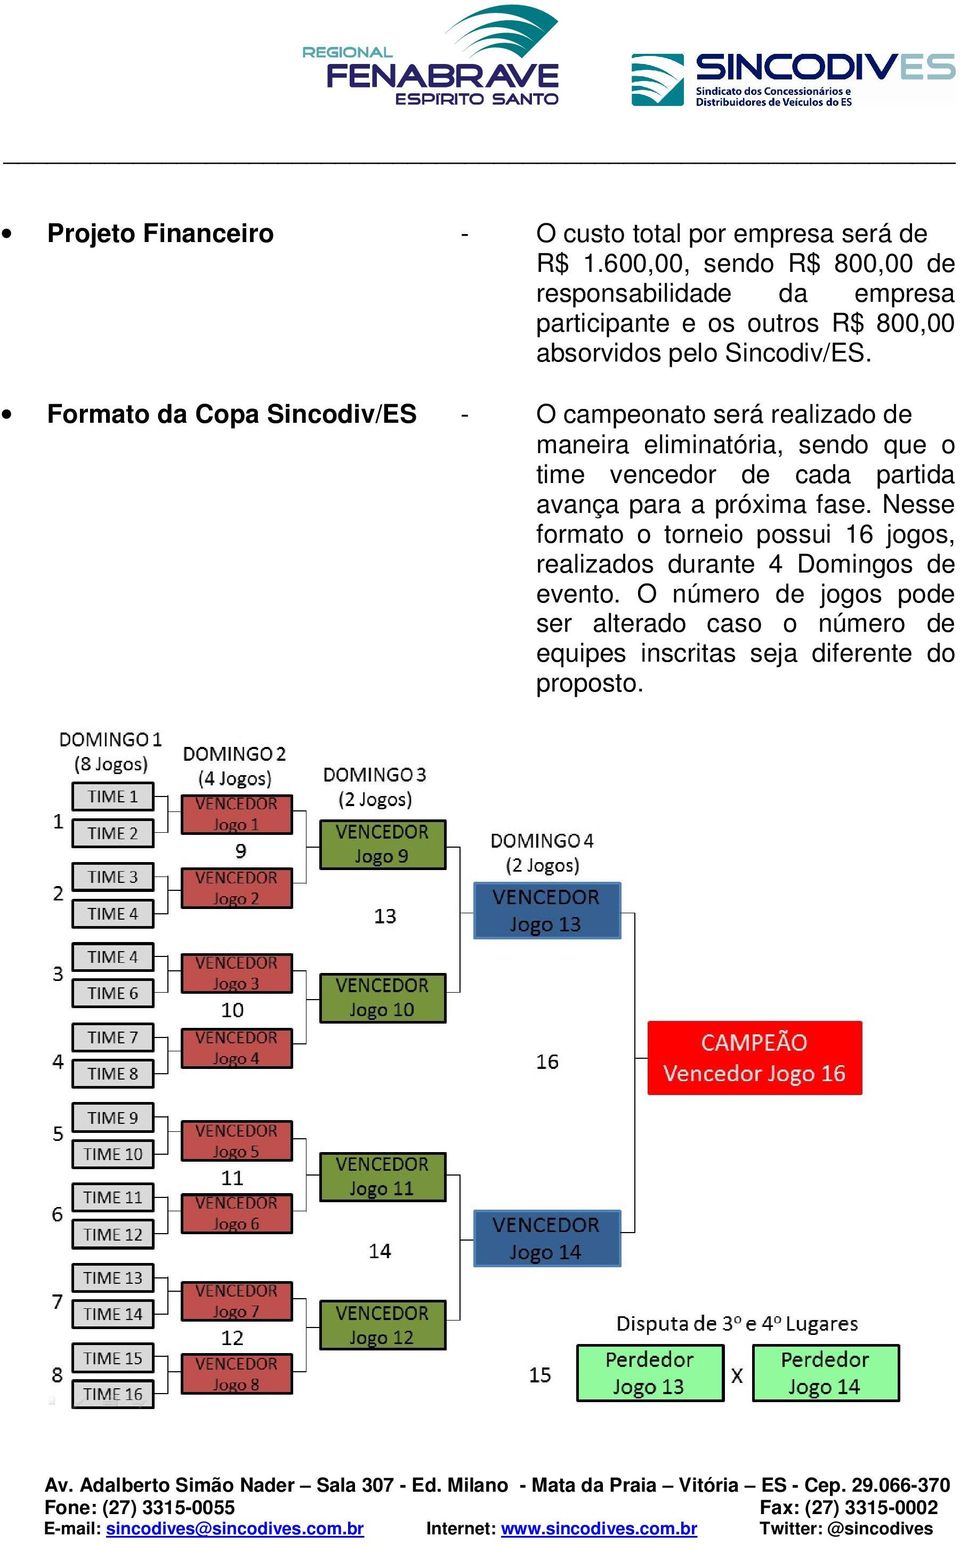 Formato da Copa Sincodiv/ES - O campeonato será realizado de maneira eliminatória, sendo que o time vencedor de cada partida